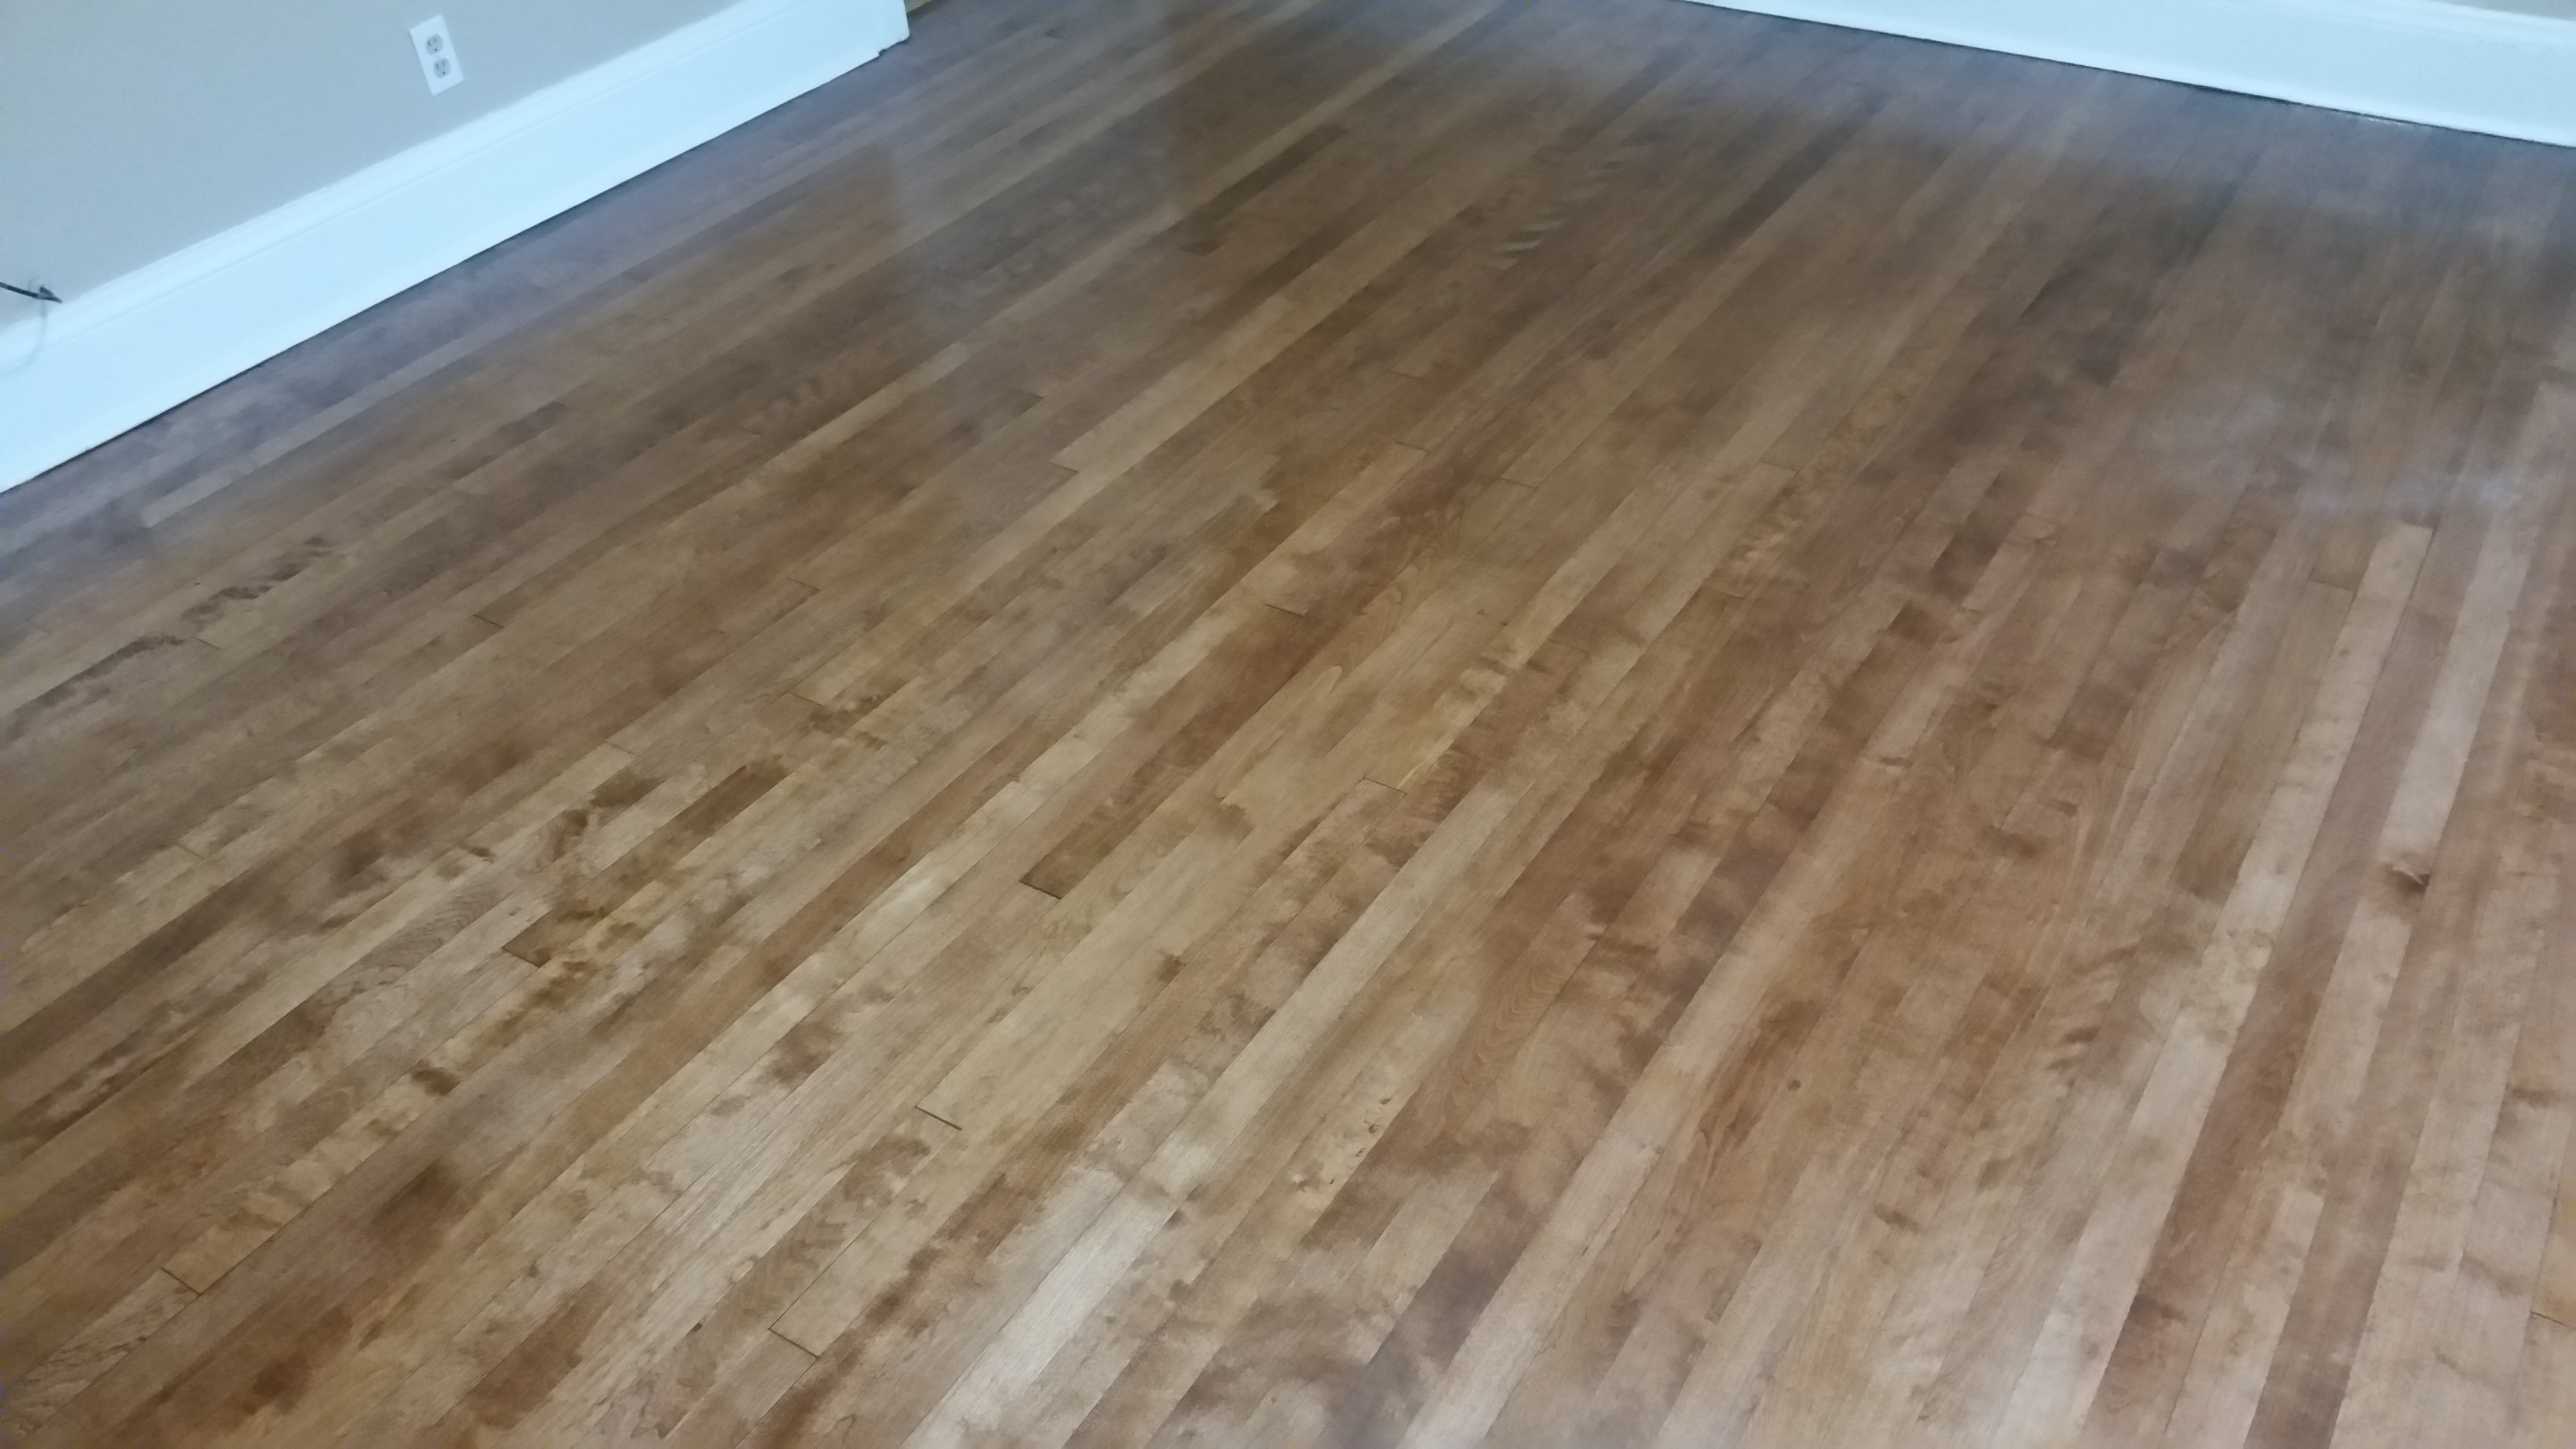 hardwood floor specialist near me of rochester hardwood floors of utica home for 20151028 104648 20160520 161308resize